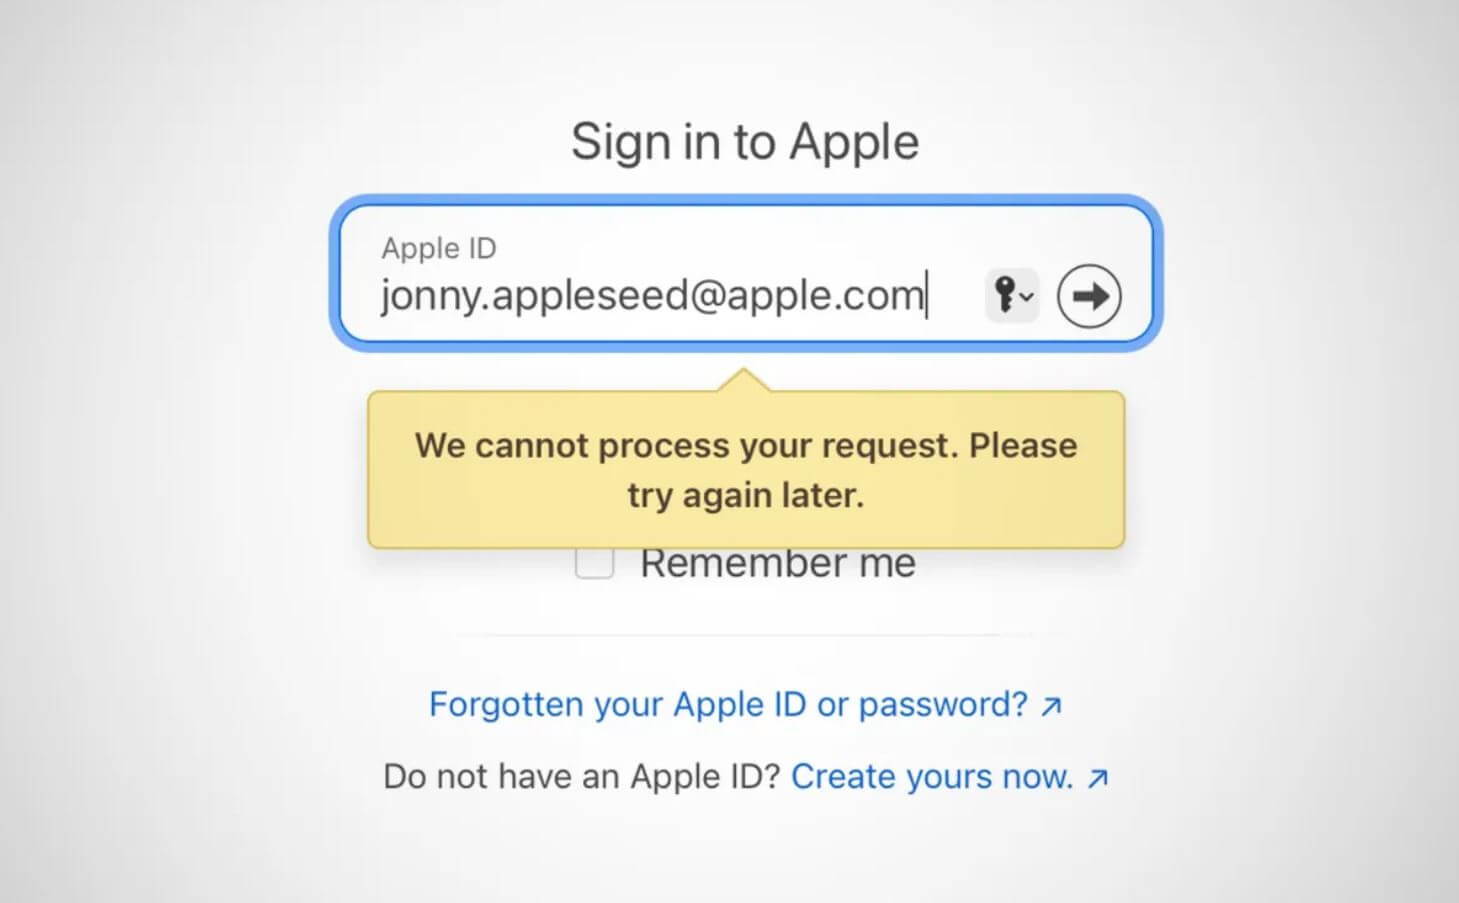 Не могу зайти в Apple ID, Айфон пишет: неправильный пароль. Что делать